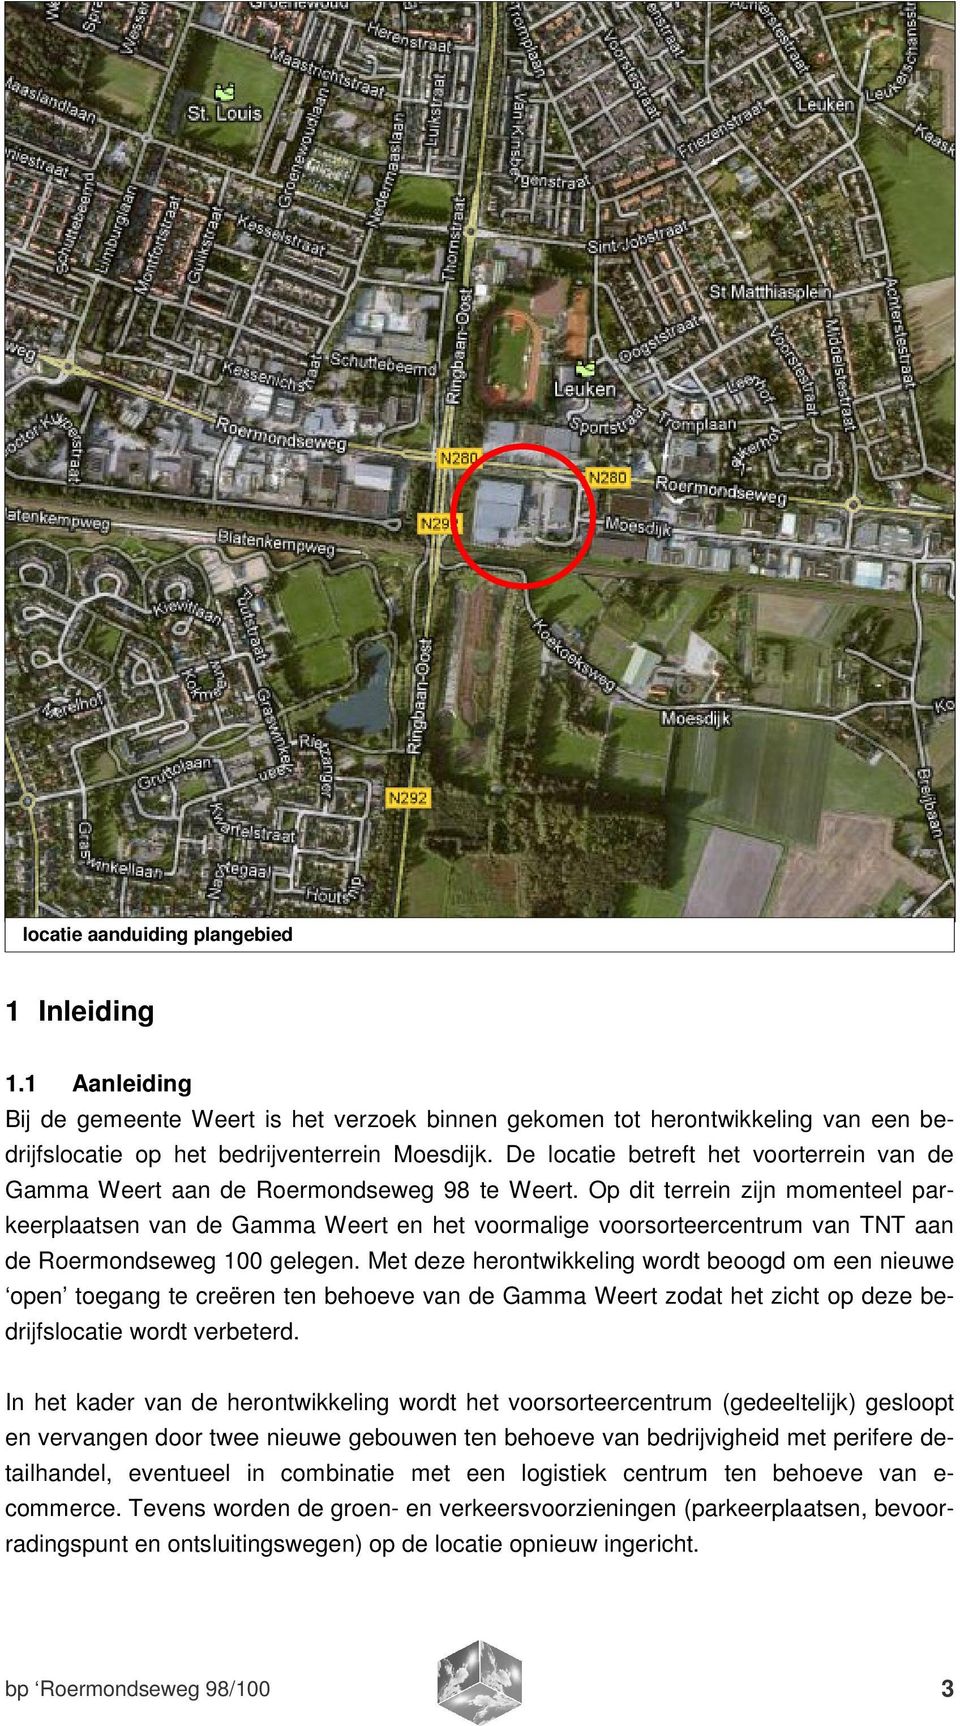 Op dit terrein zijn momenteel parkeerplaatsen van de Gamma Weert en het voormalige voorsorteercentrum van TNT aan de Roermondseweg 100 gelegen.